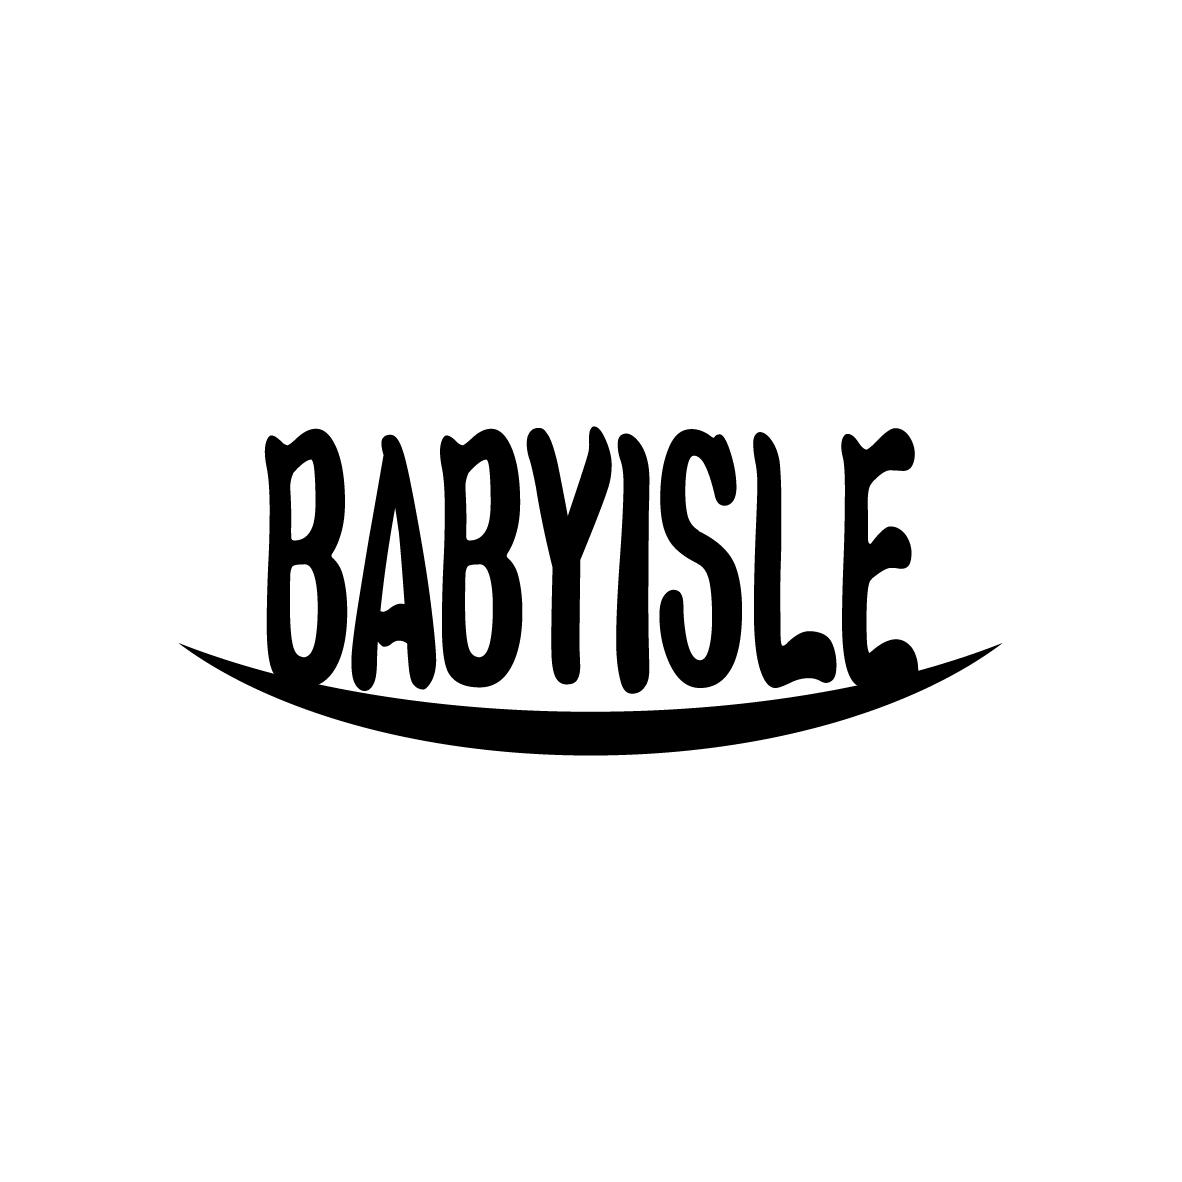 BABYISLE